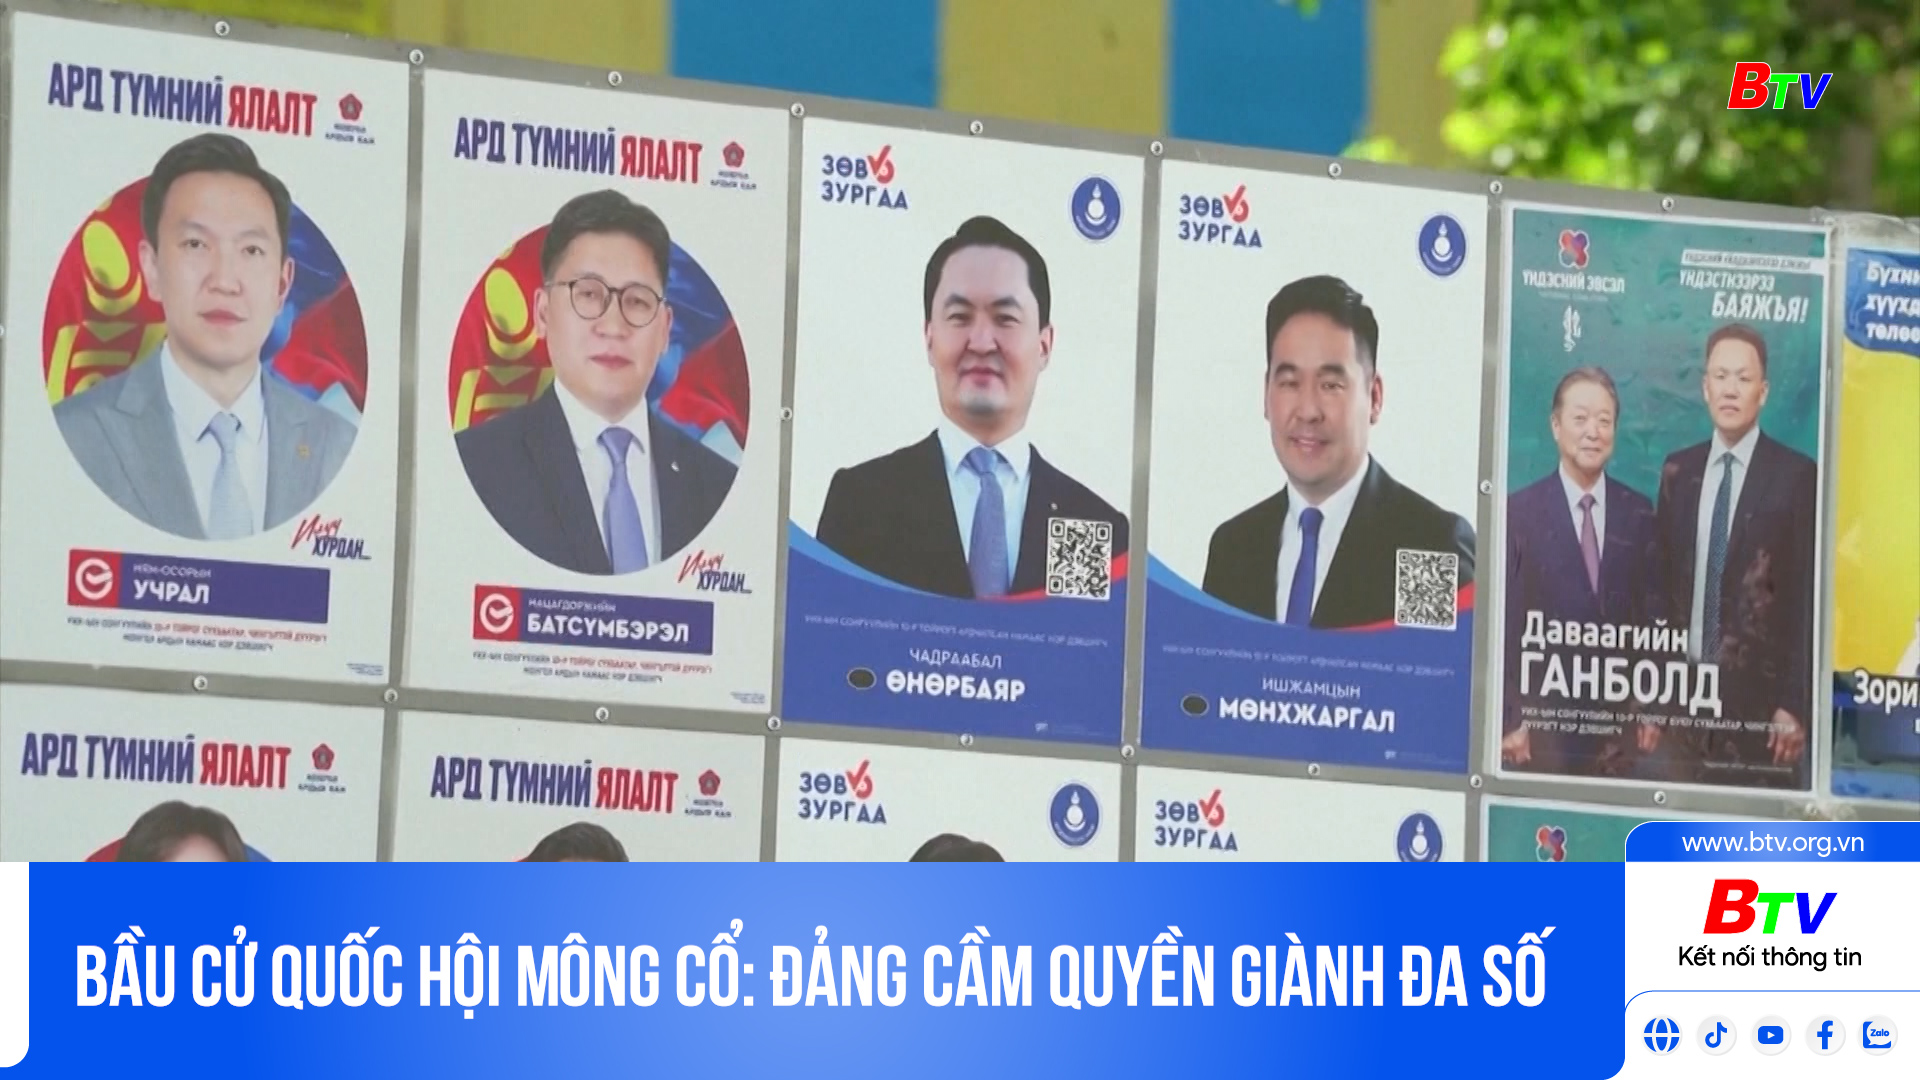 Bầu cử Quốc hội Mông Cổ: đảng cầm quyền giành đa số